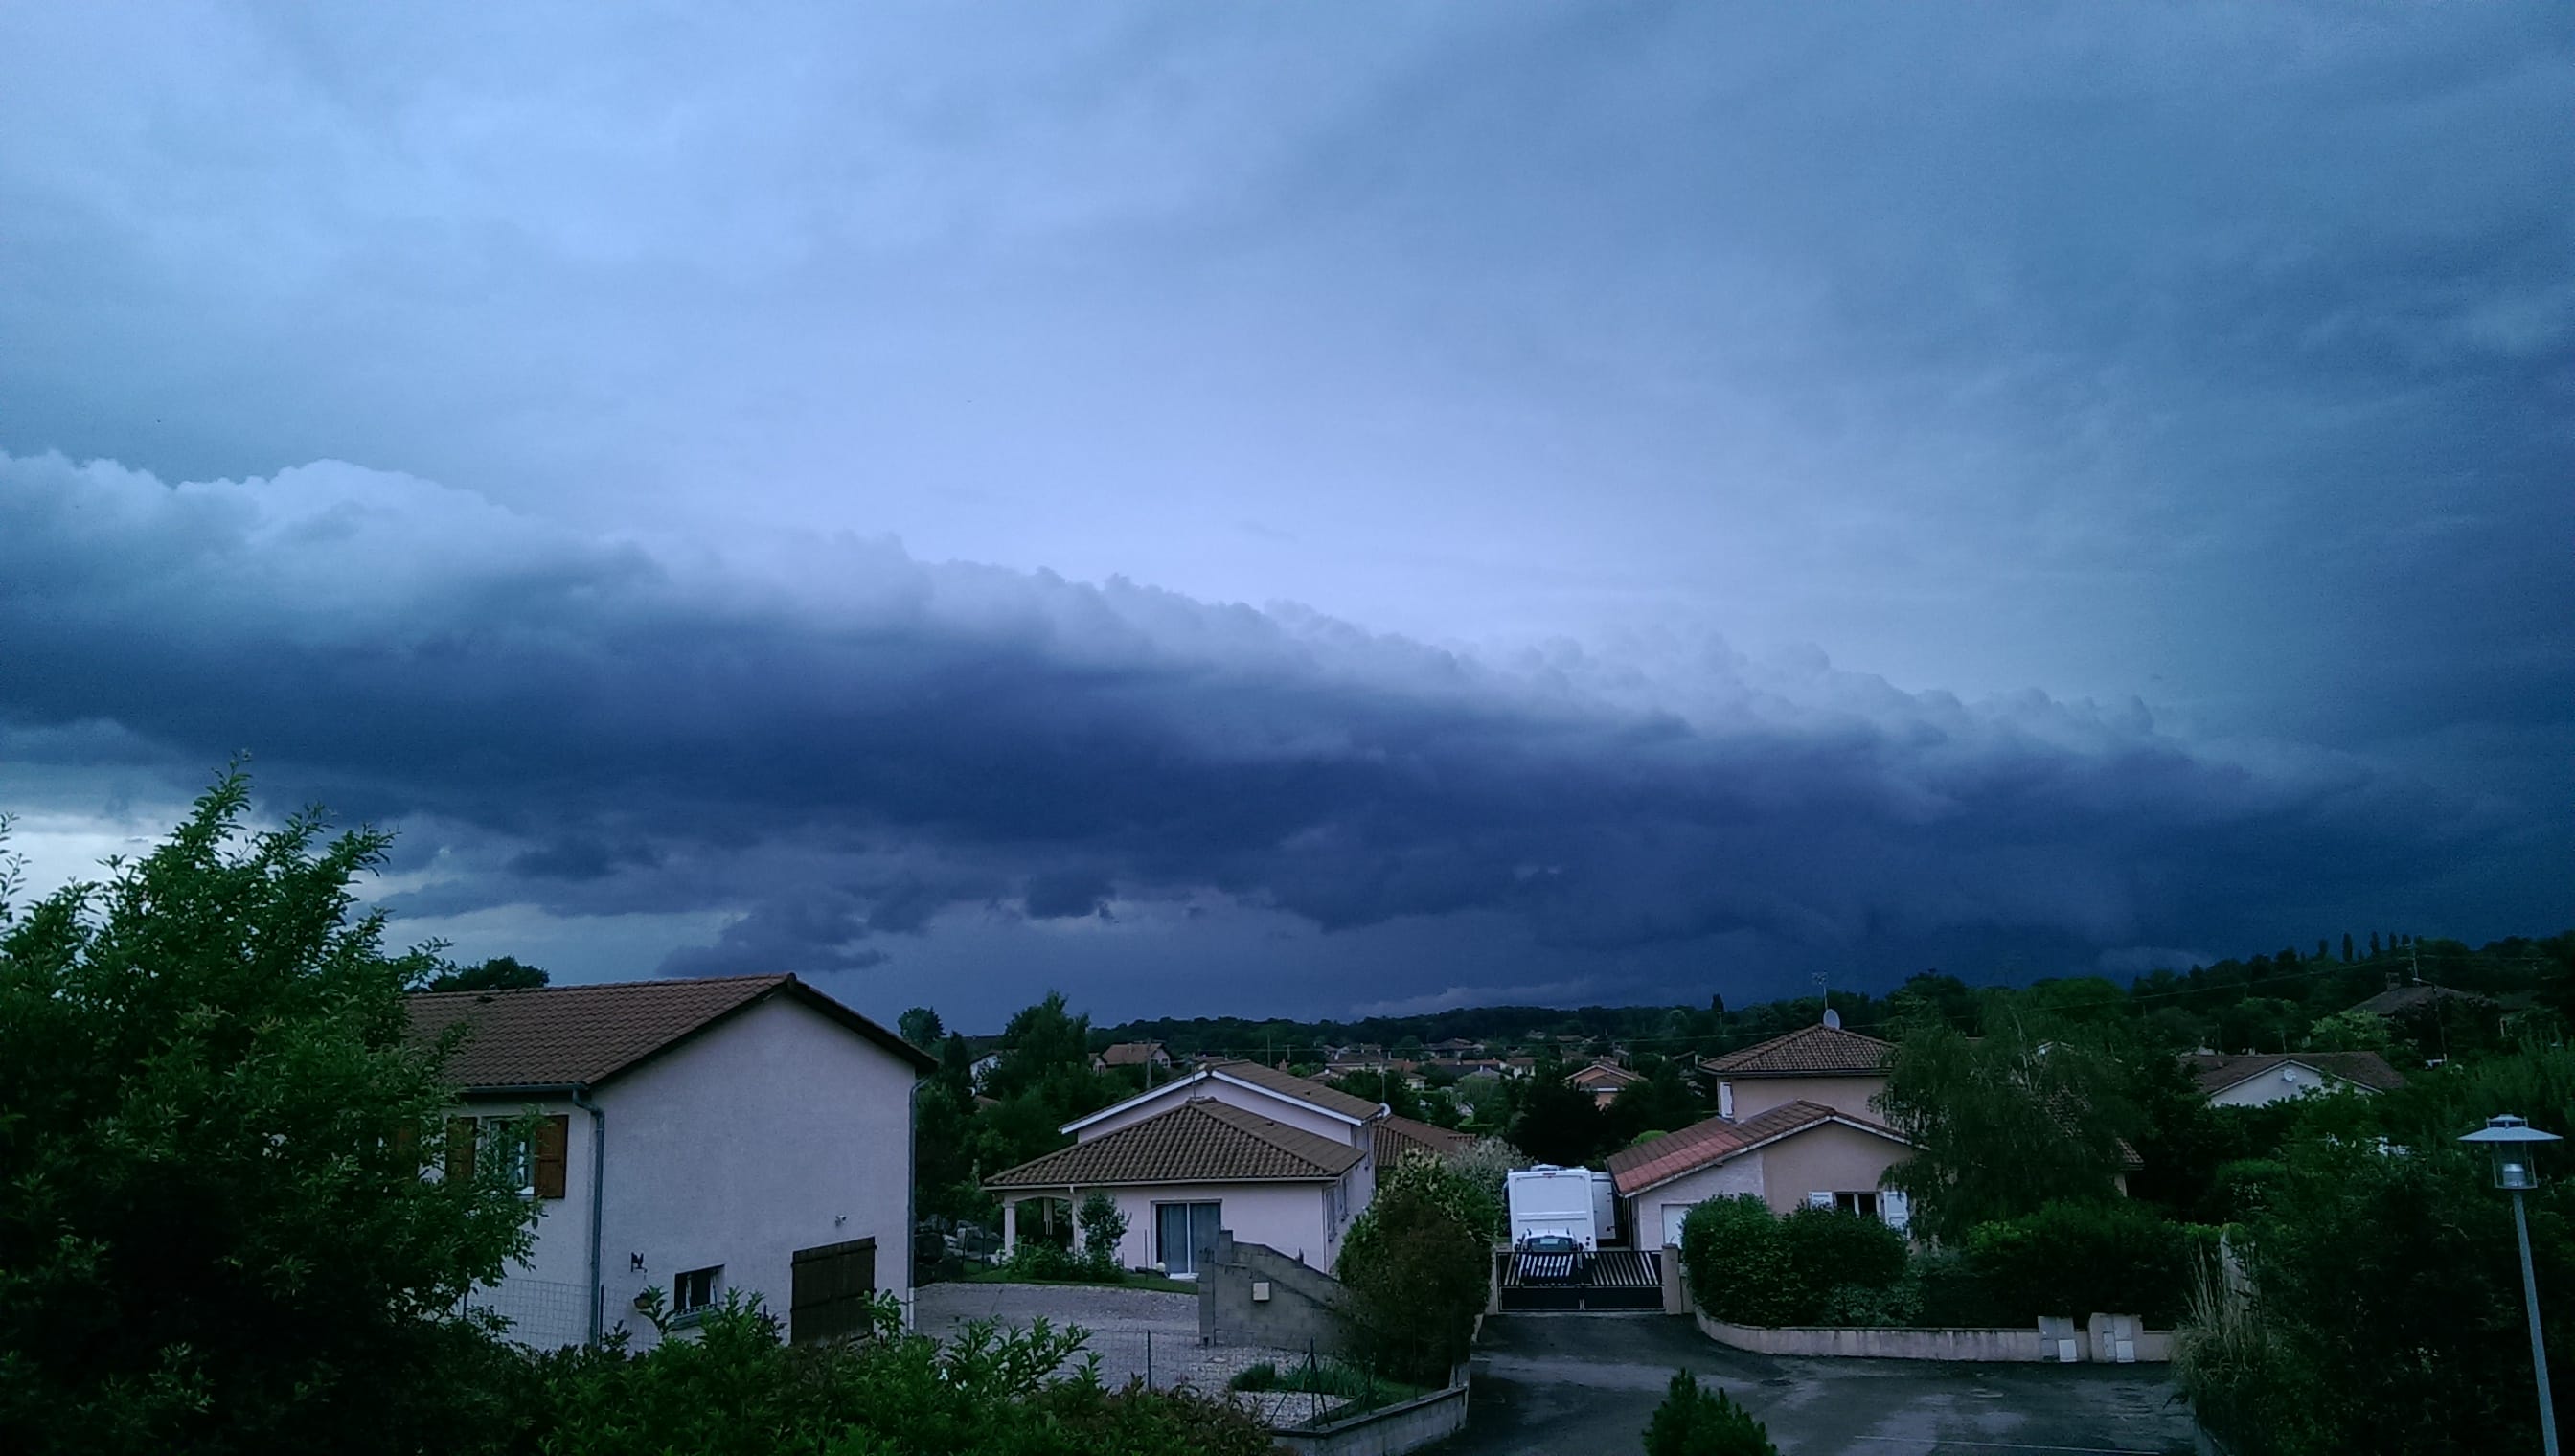 Gros orage à Ceyzériat. - 27/05/2018 19:30 - David Drencourt